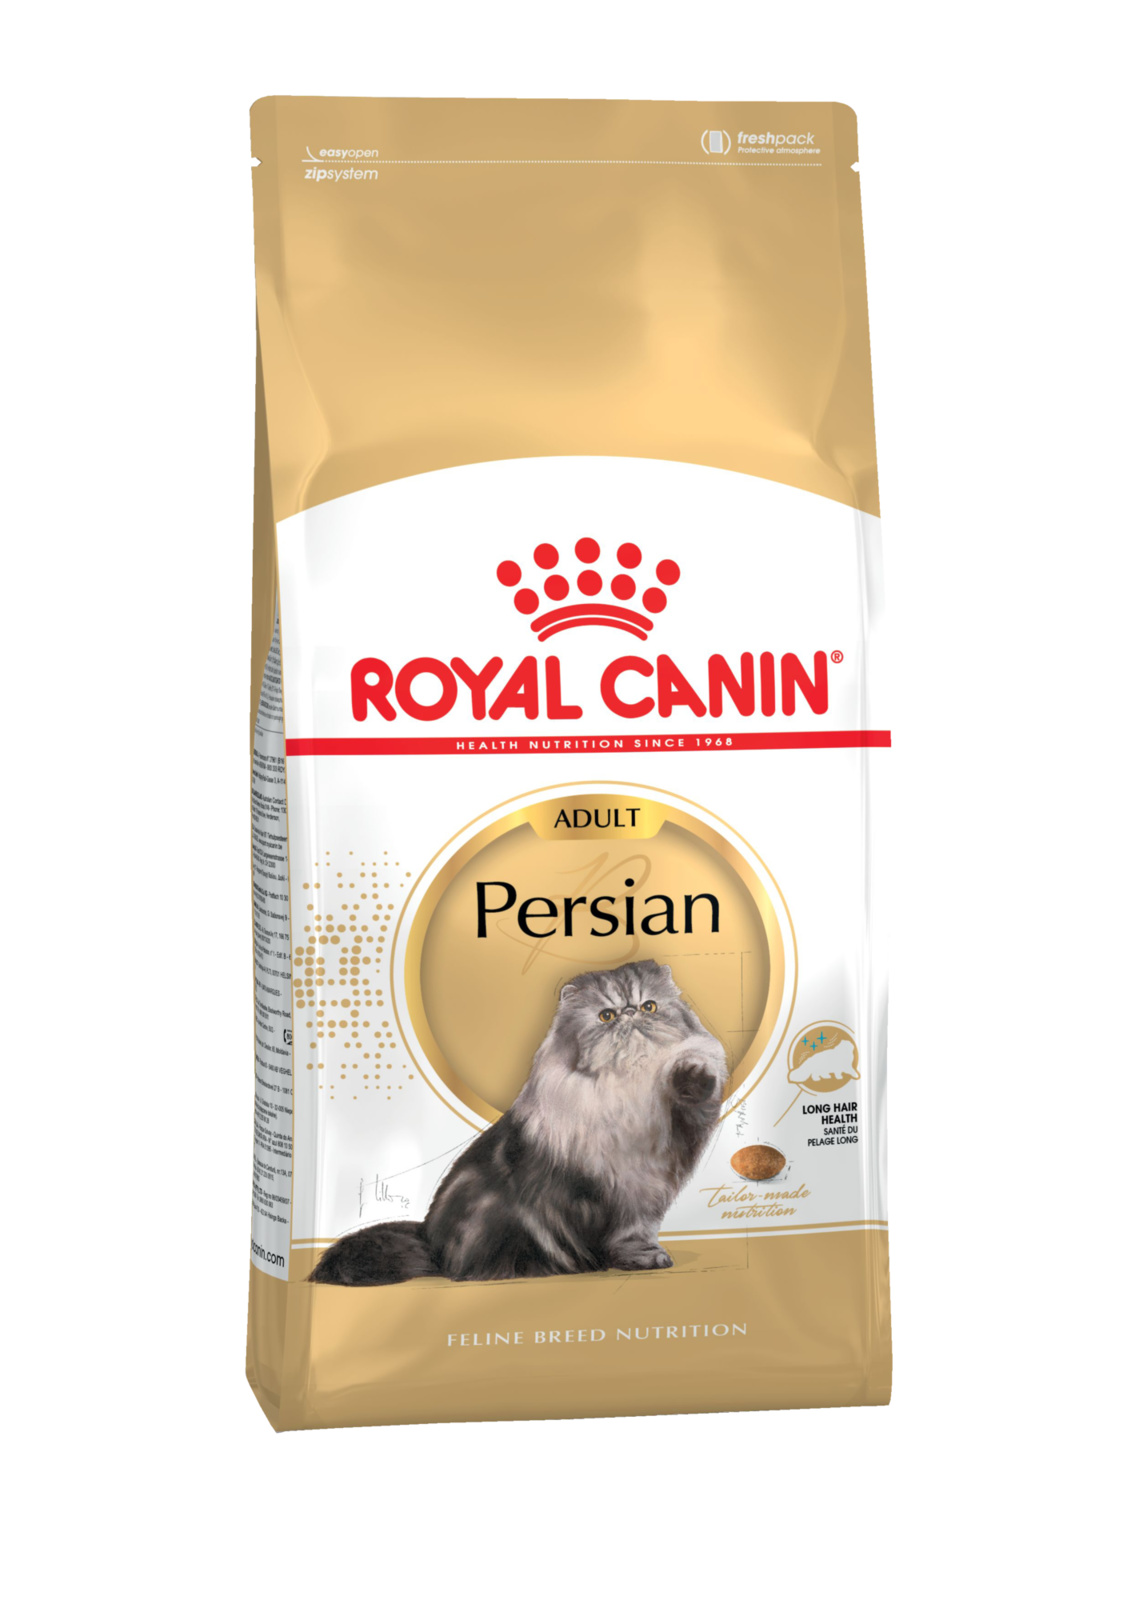 Для персидских кошек 1-10 лет (4 кг)